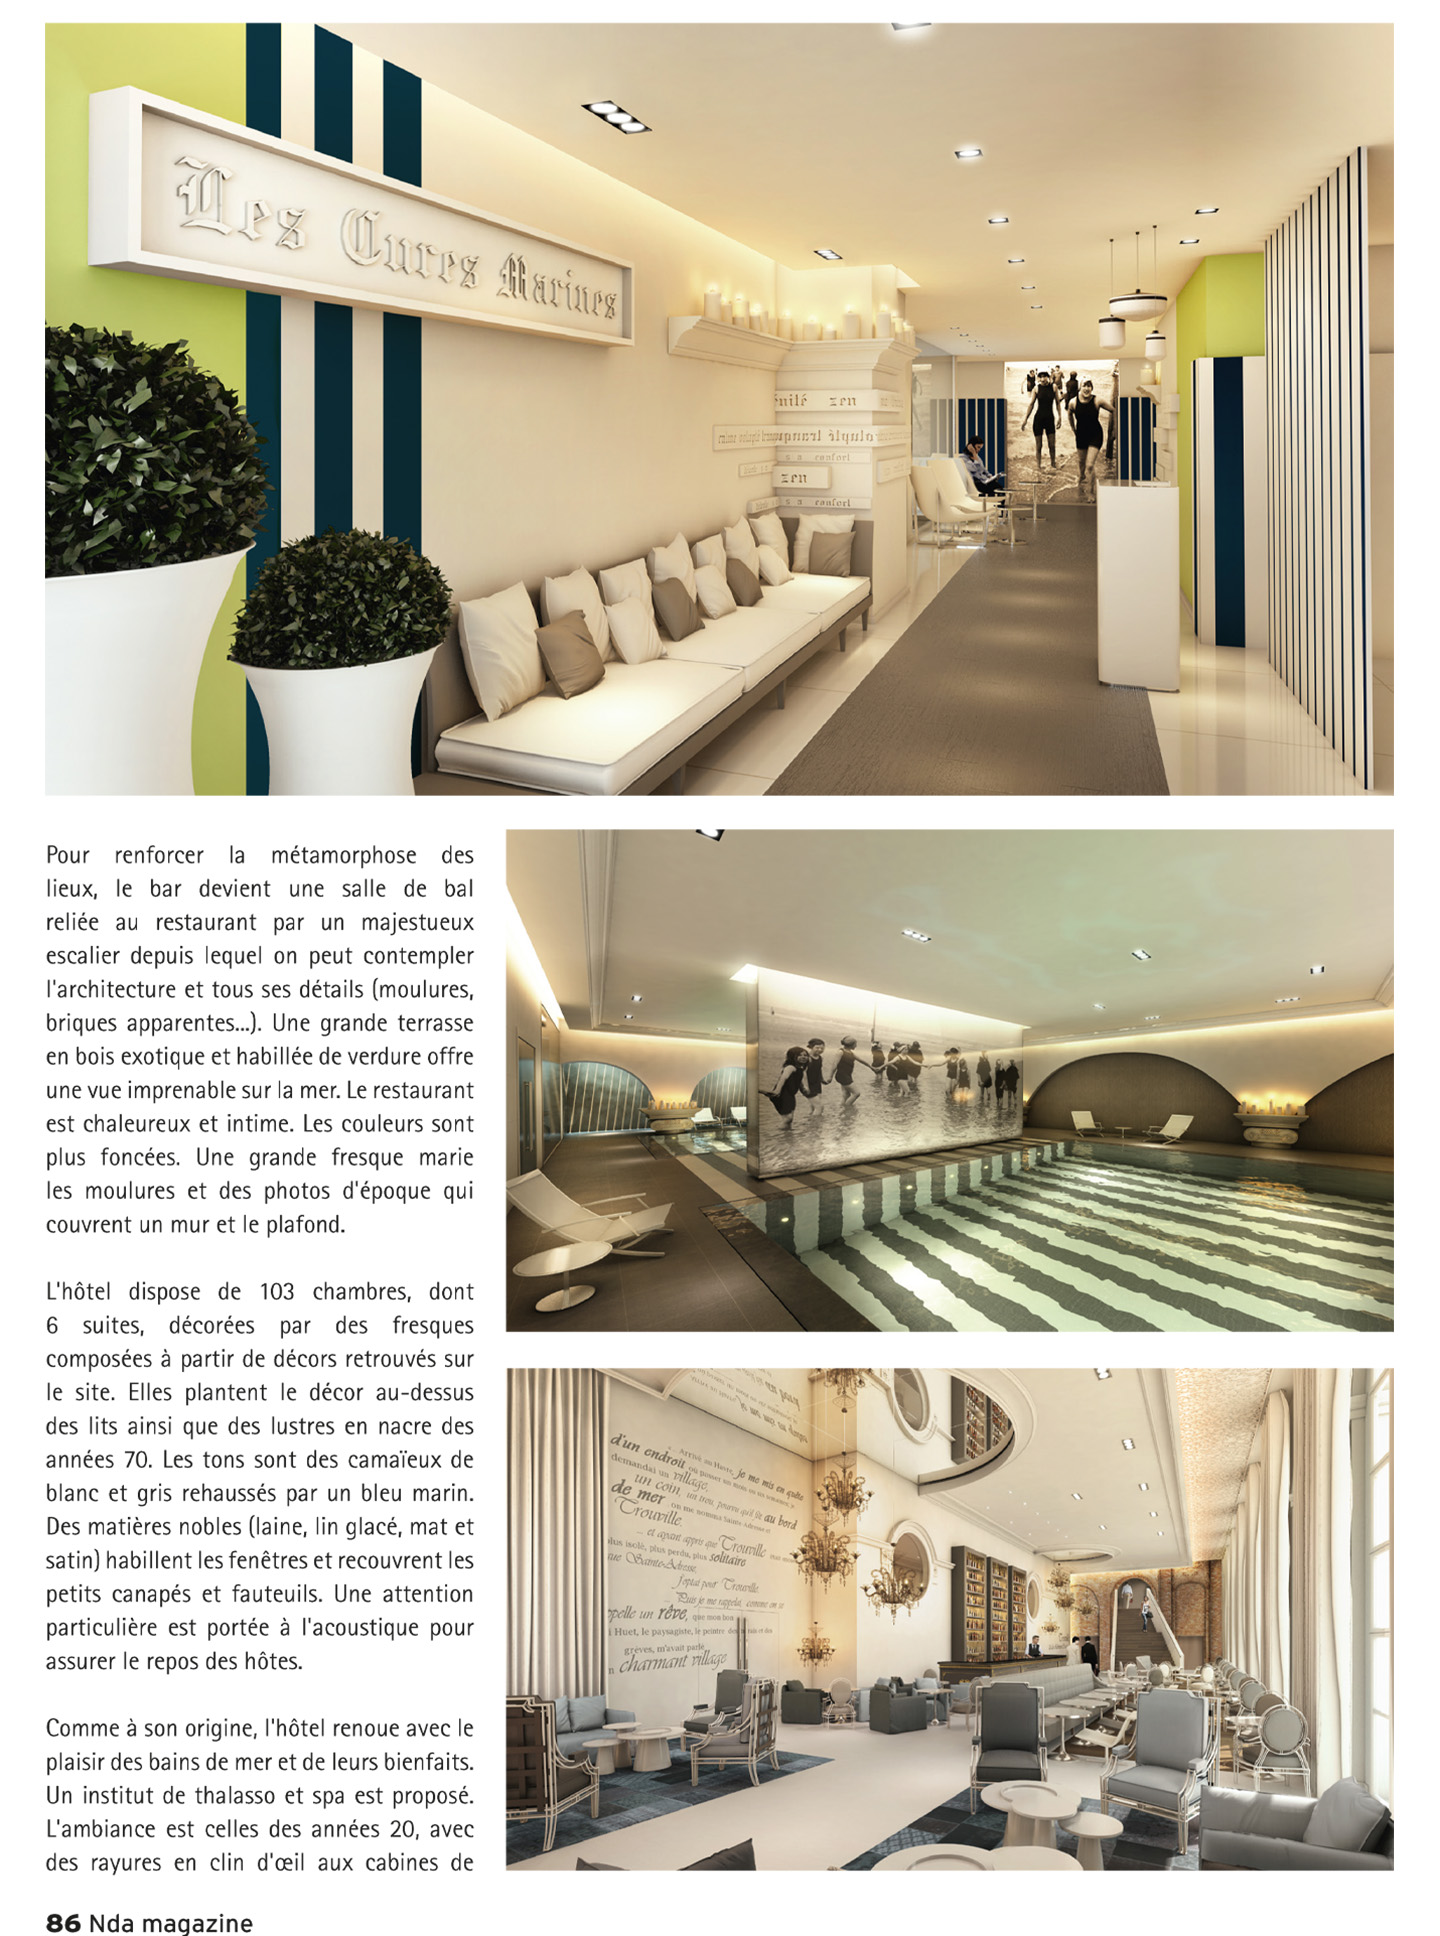 article sur les cures marines de trouville dans le magazine nda, hotel de luxe et spa 5 étoiles réalisé par le studio d'architecture d'intérieur jean-philippe nuel